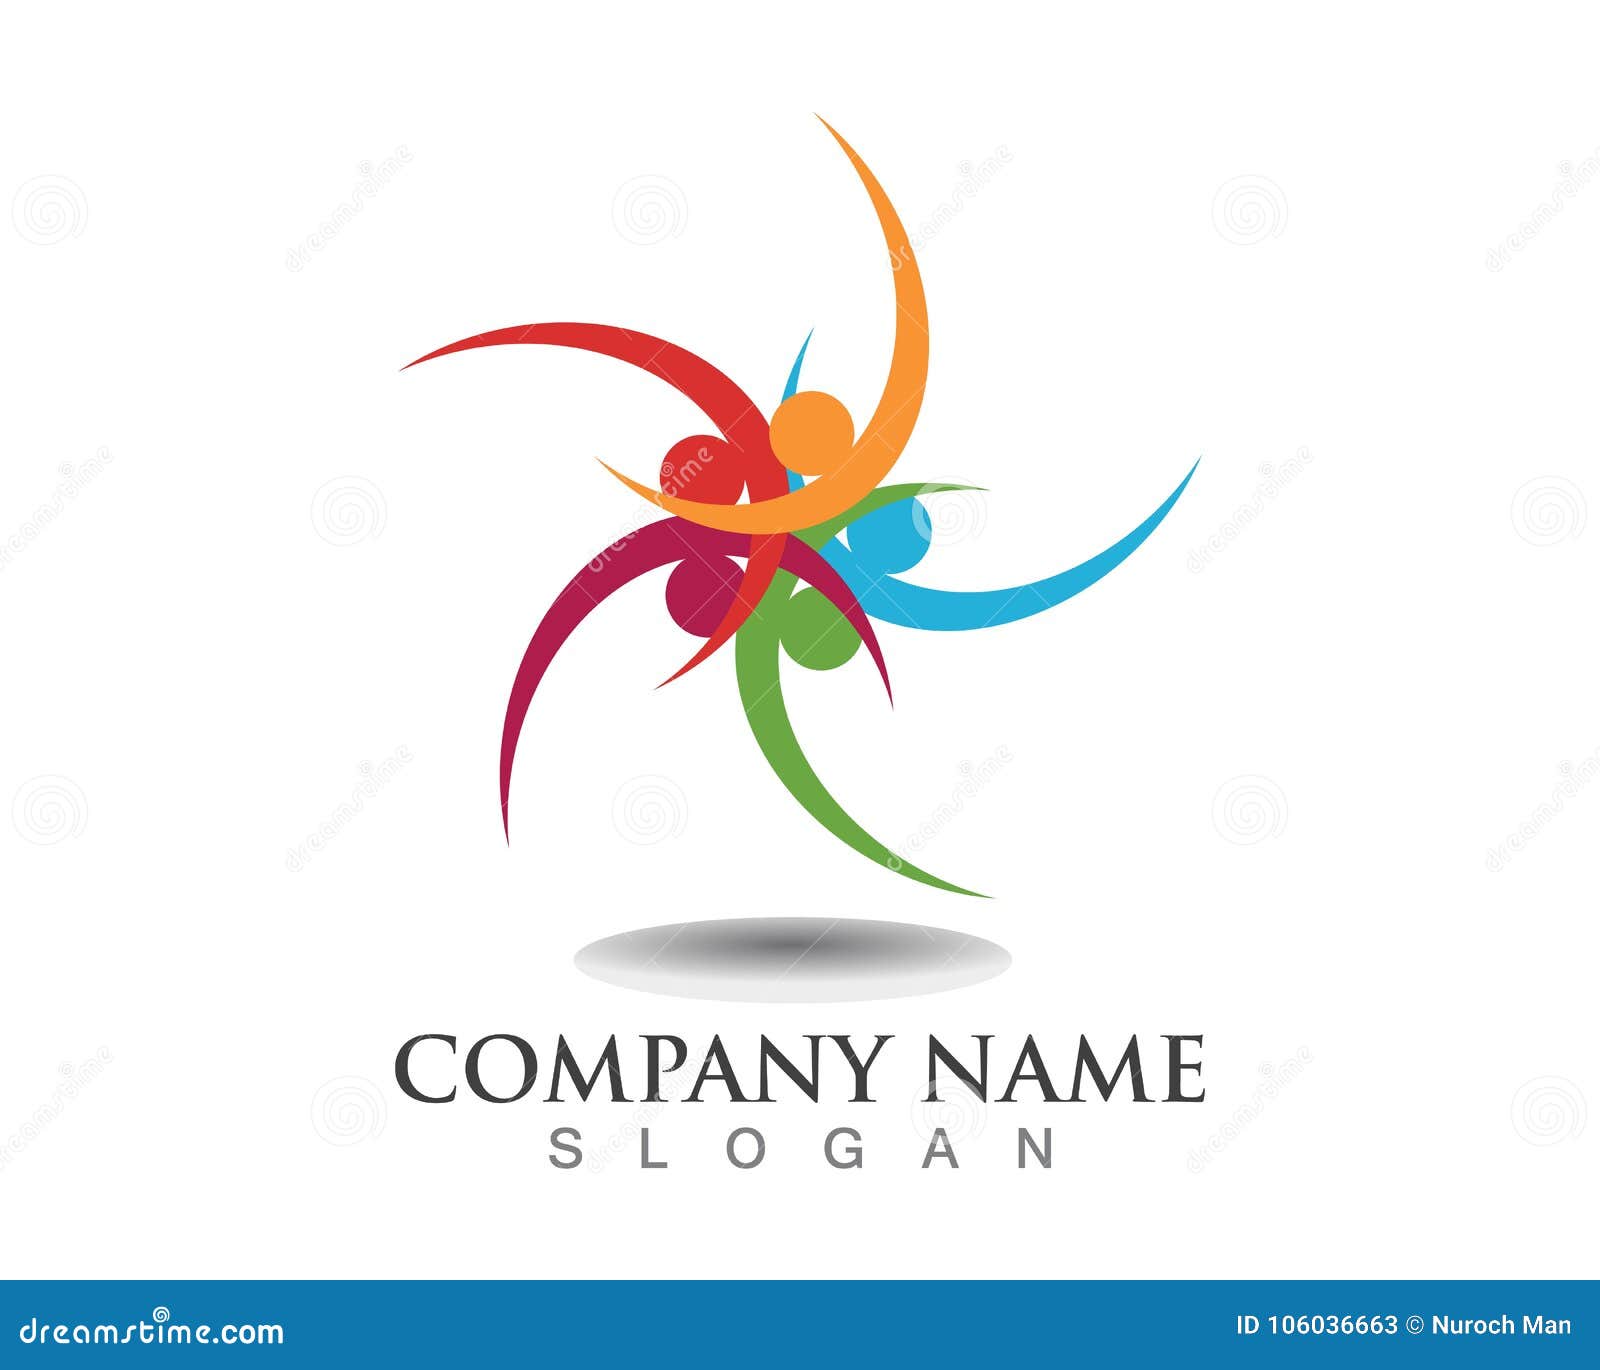 Community Social Logos Template Symbols Stock Vector - Illustration of ...